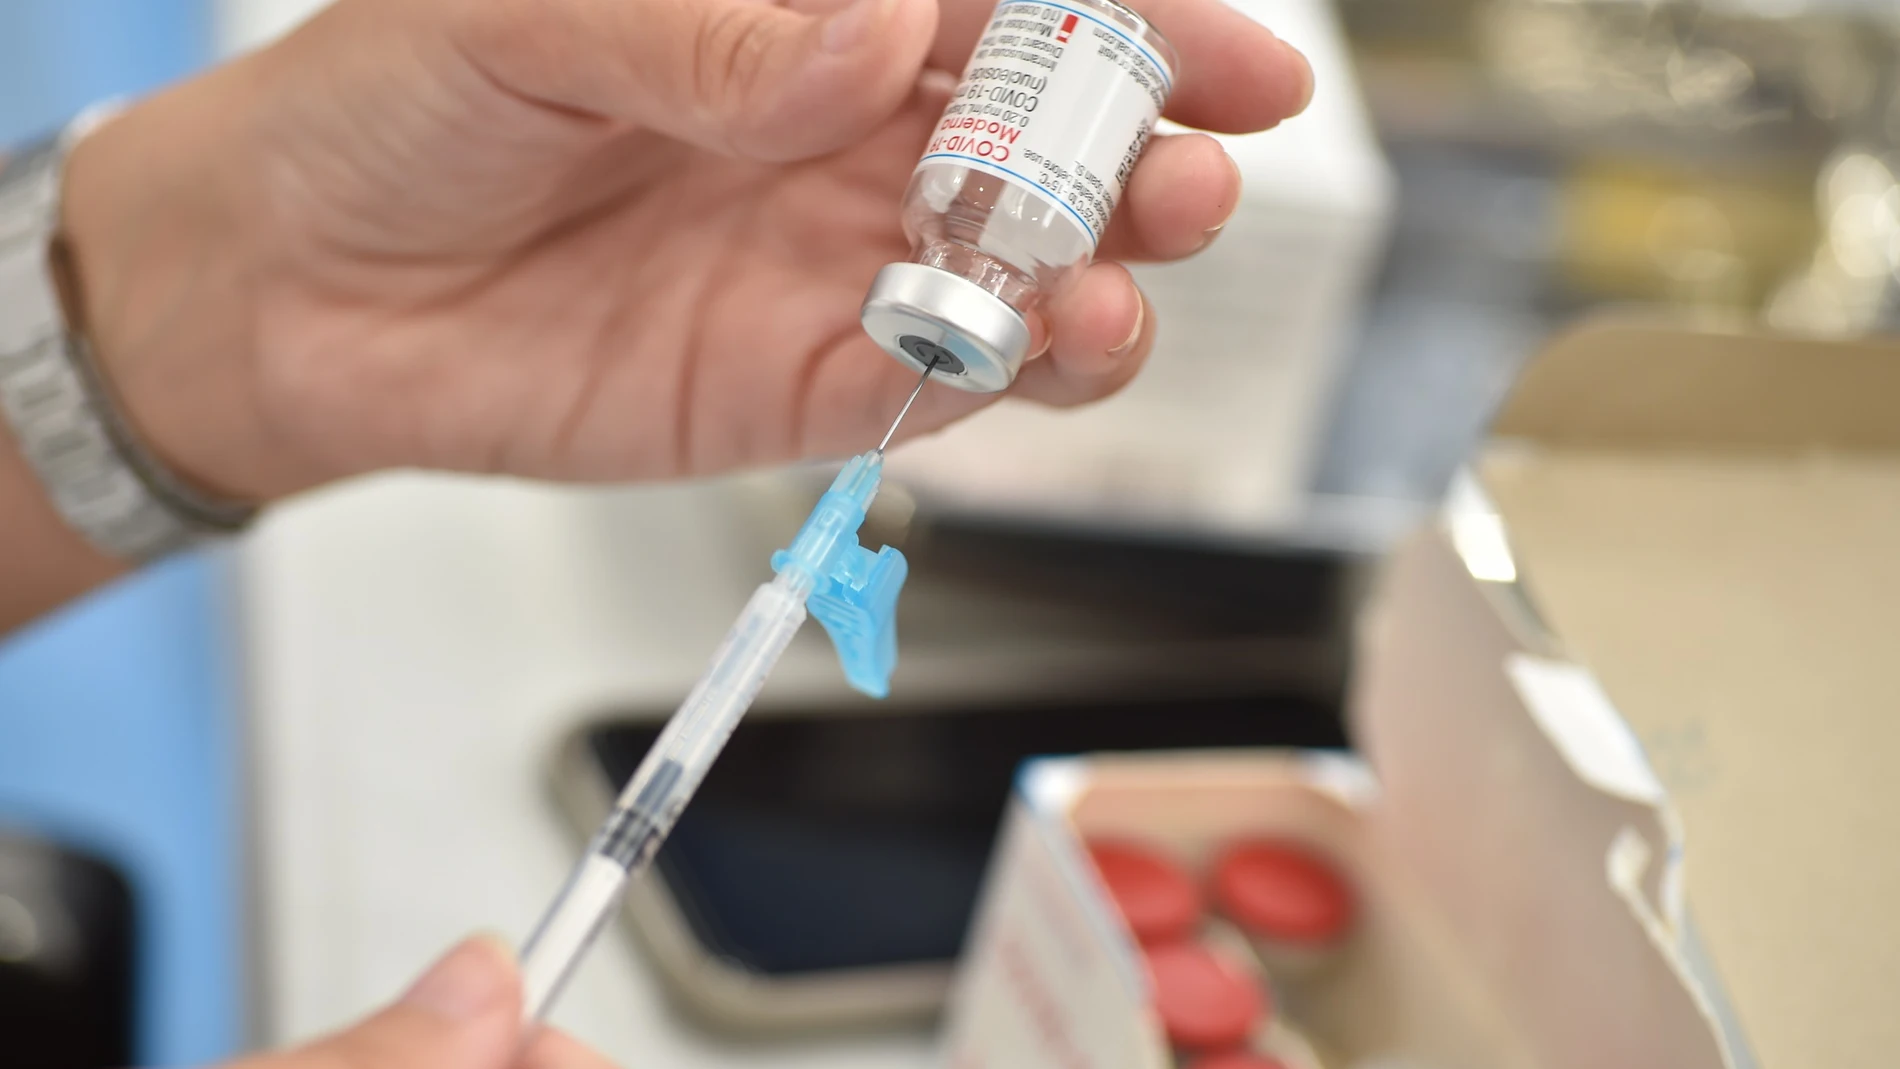 Preparación dosis vacuna Moderna contra el Covid-19